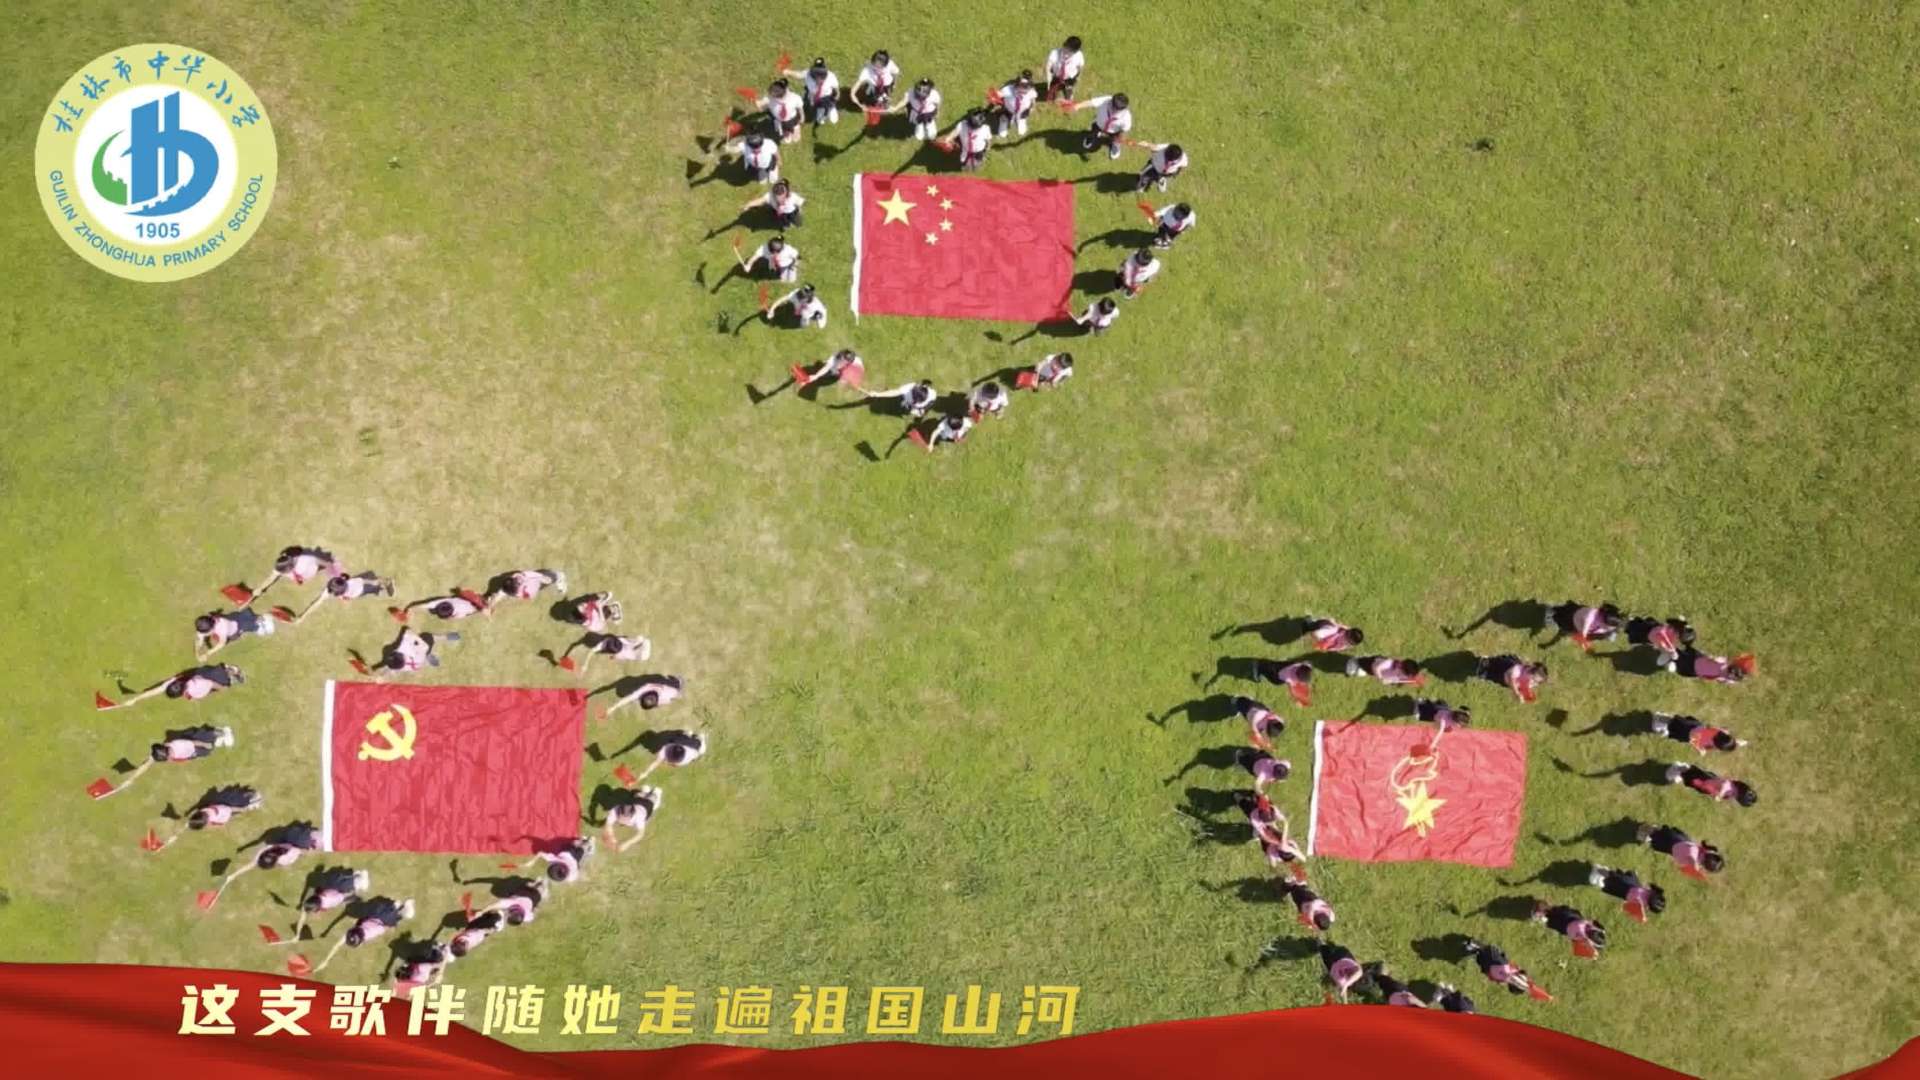 桂林市中华小学庆建党百年献唱《妈妈教我一支歌》